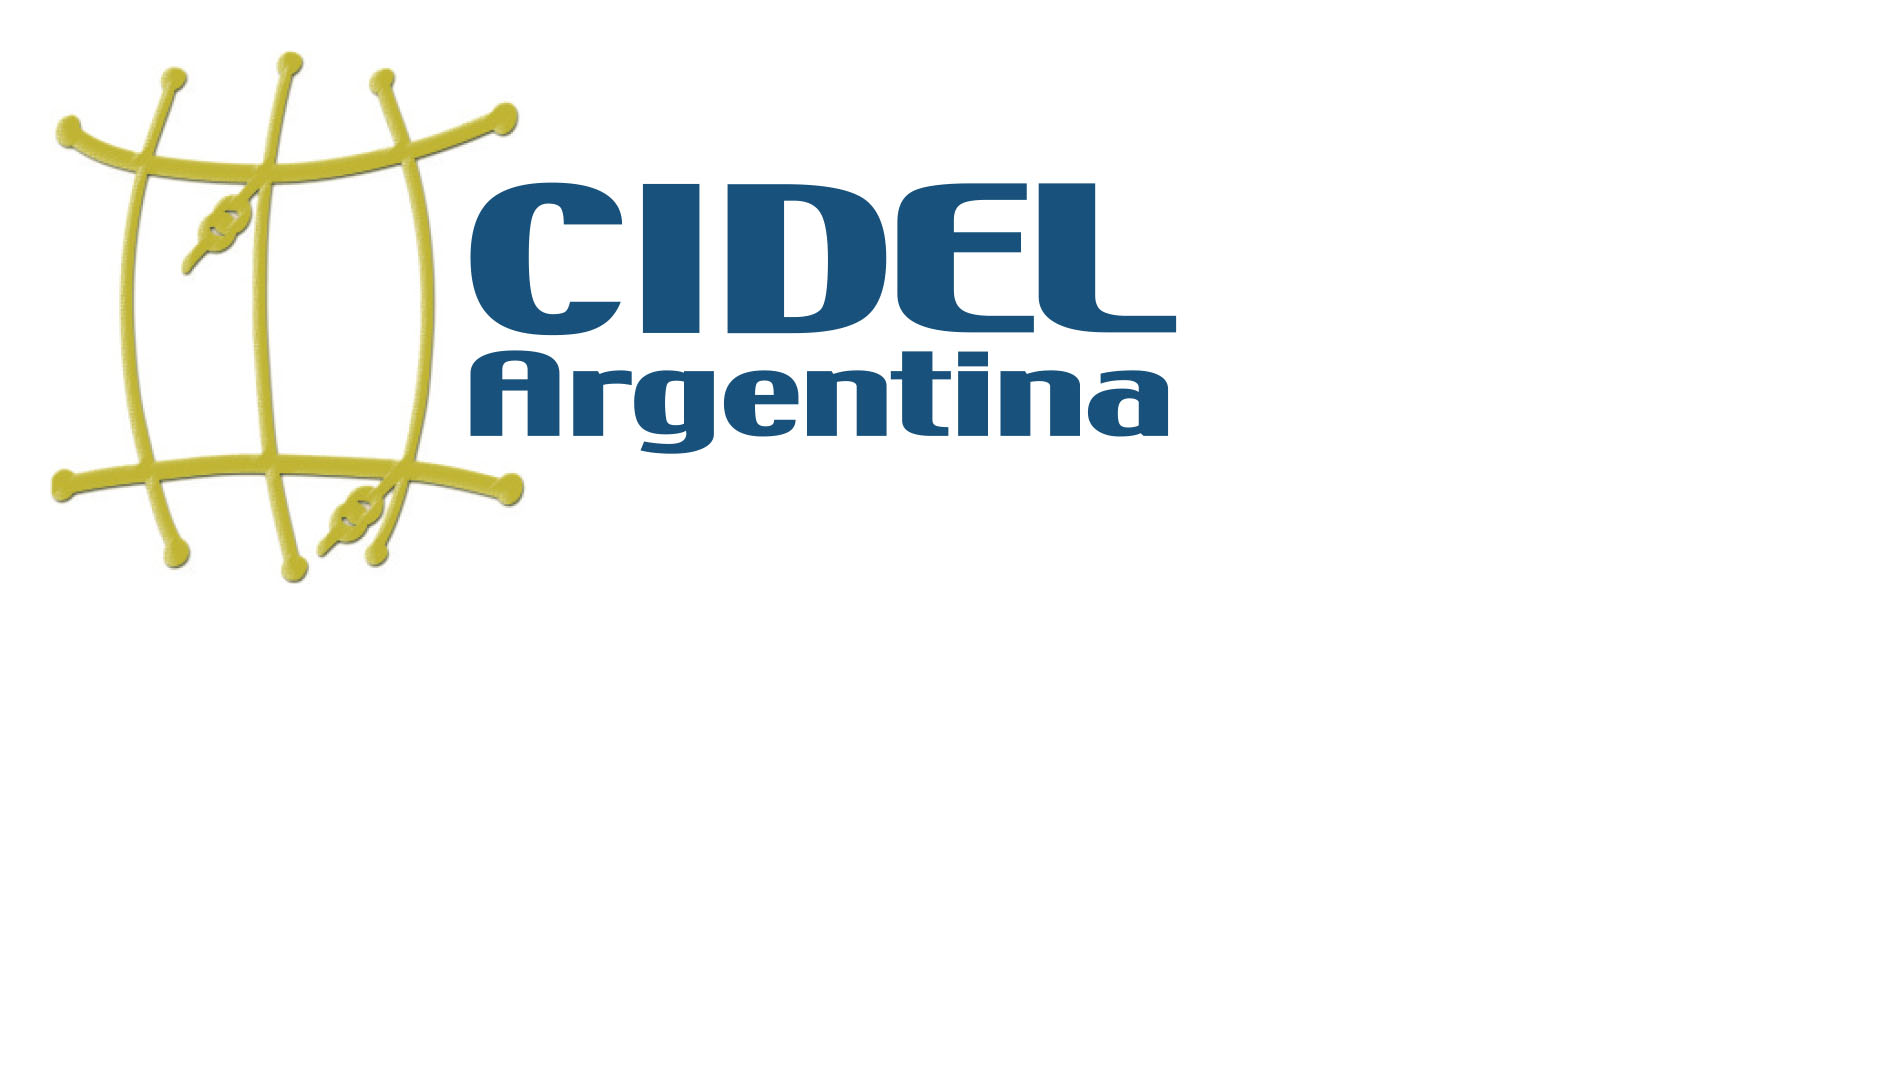 CIDEL Argentina